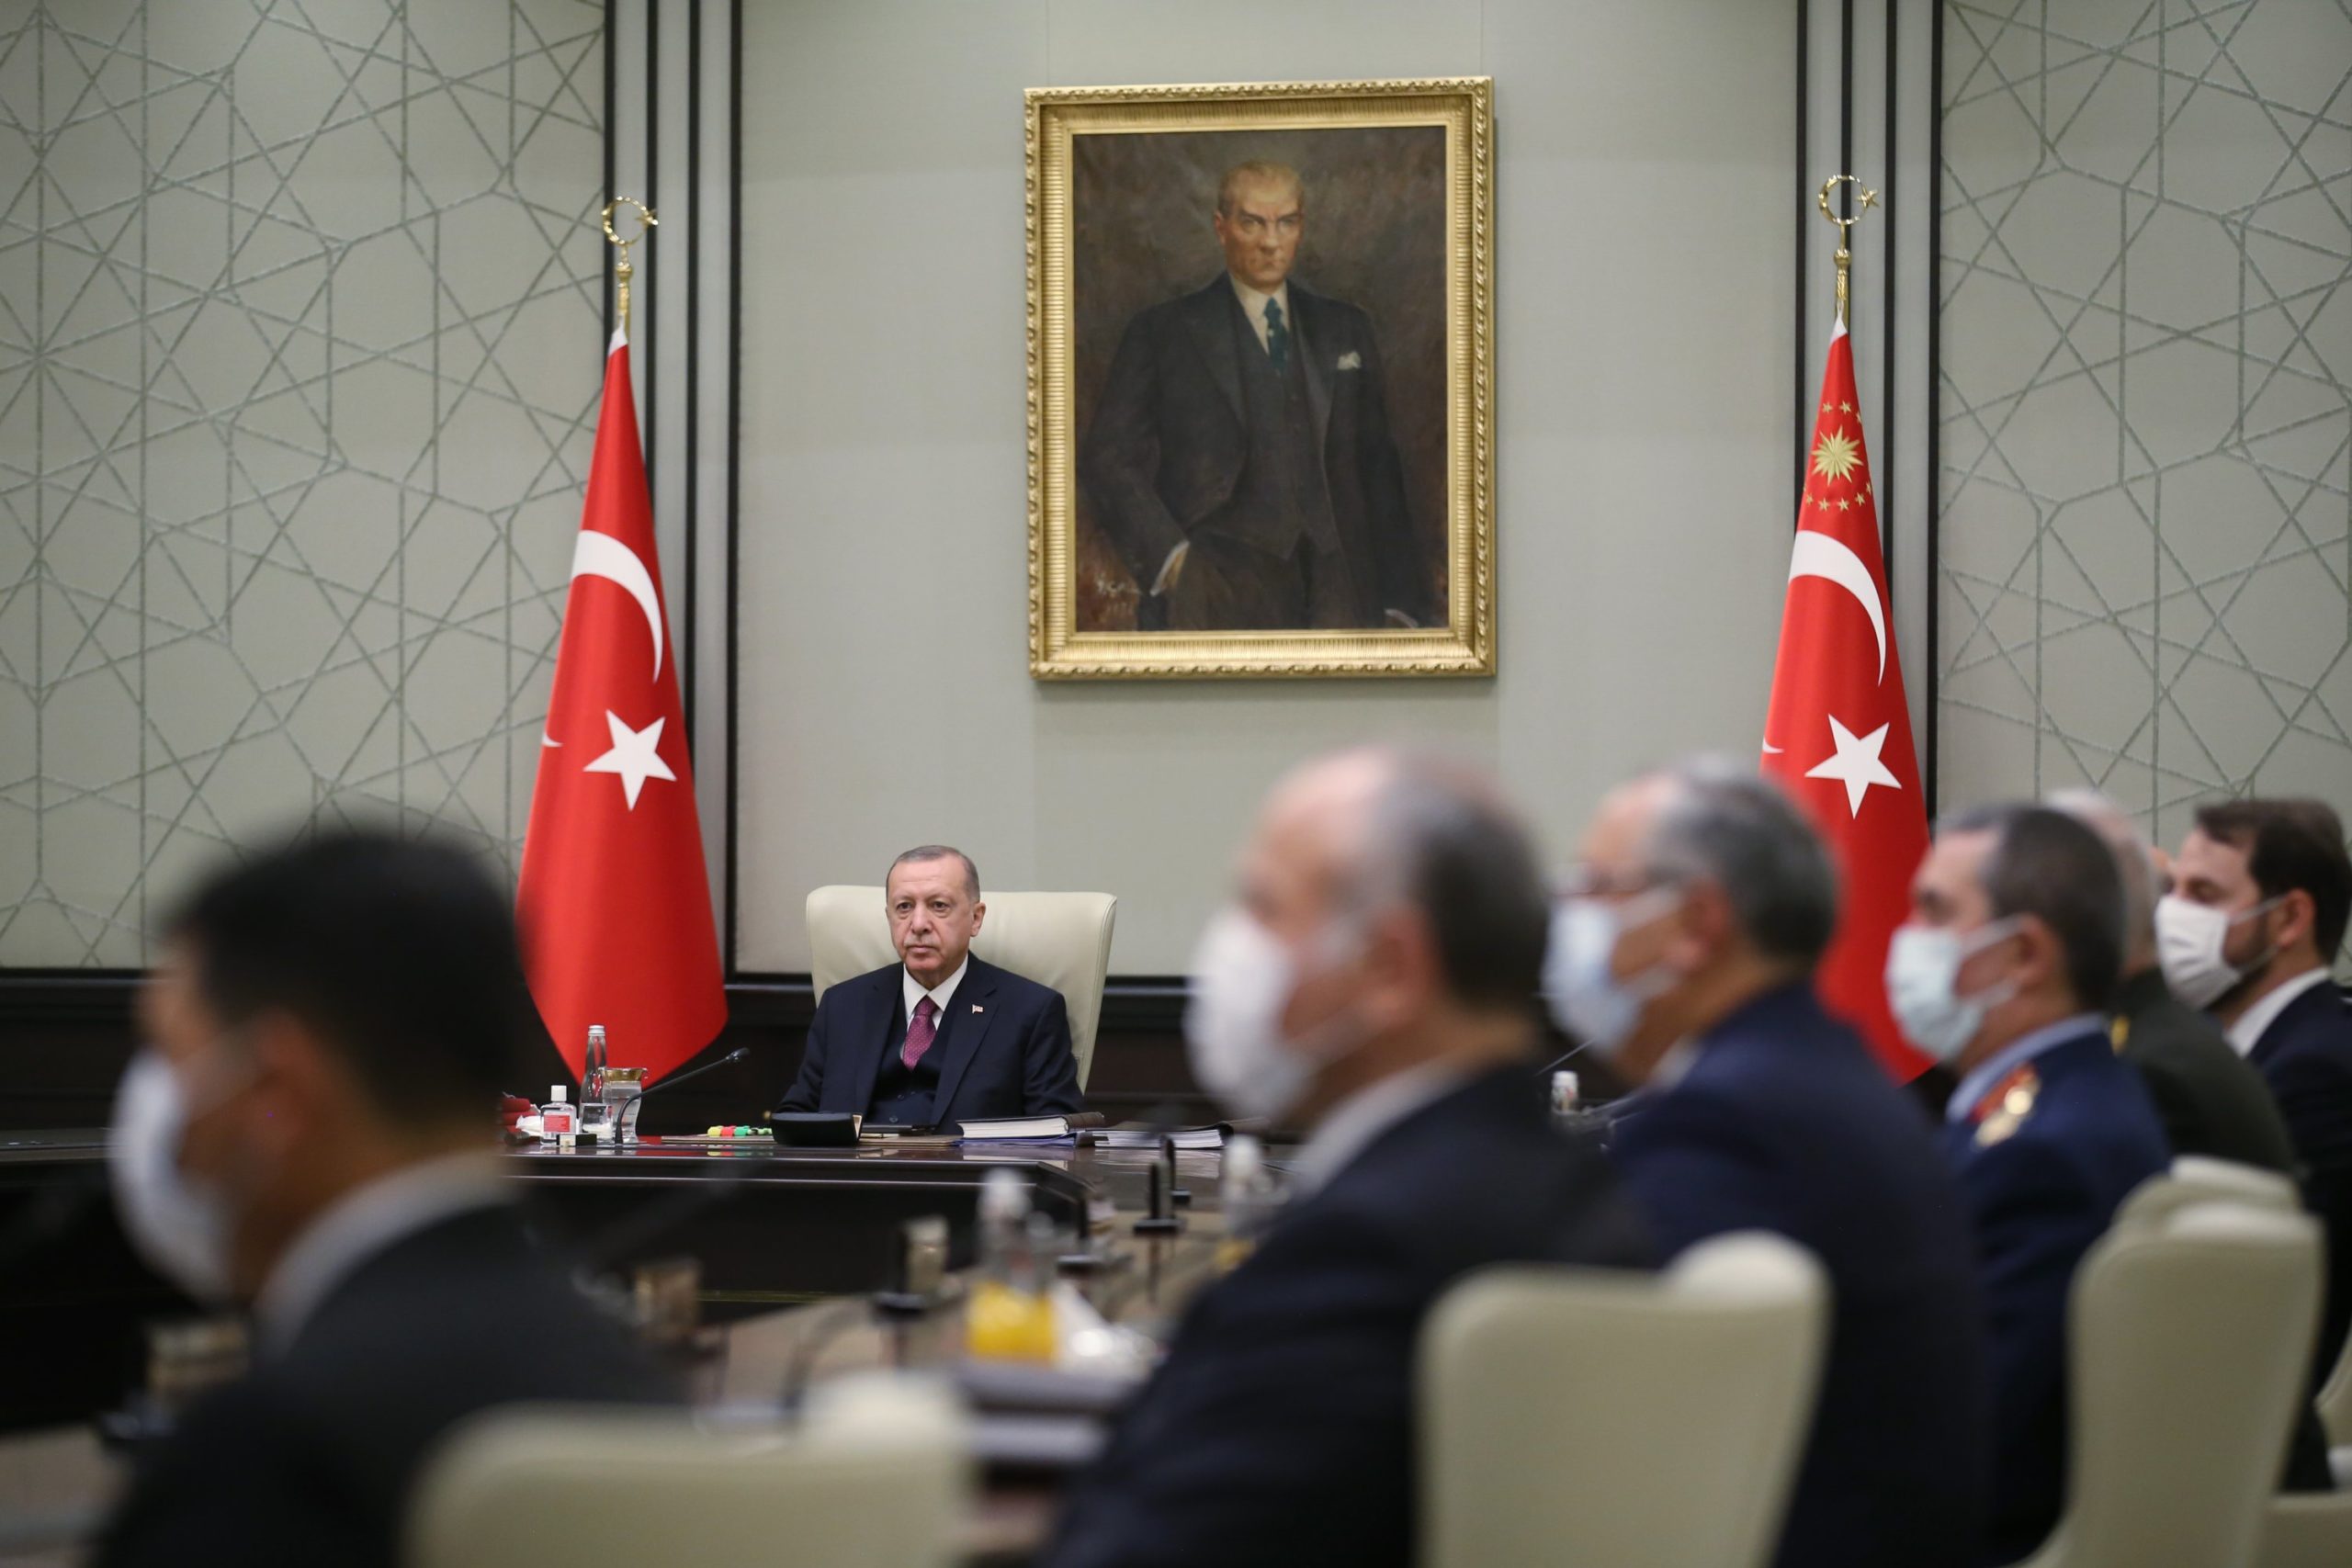 Συμβούλιο Εθνικής Ασφάλειας Τουρκίας: "Tουρκική μειονότητα" και "δύο κράτη στην Κύπρο"